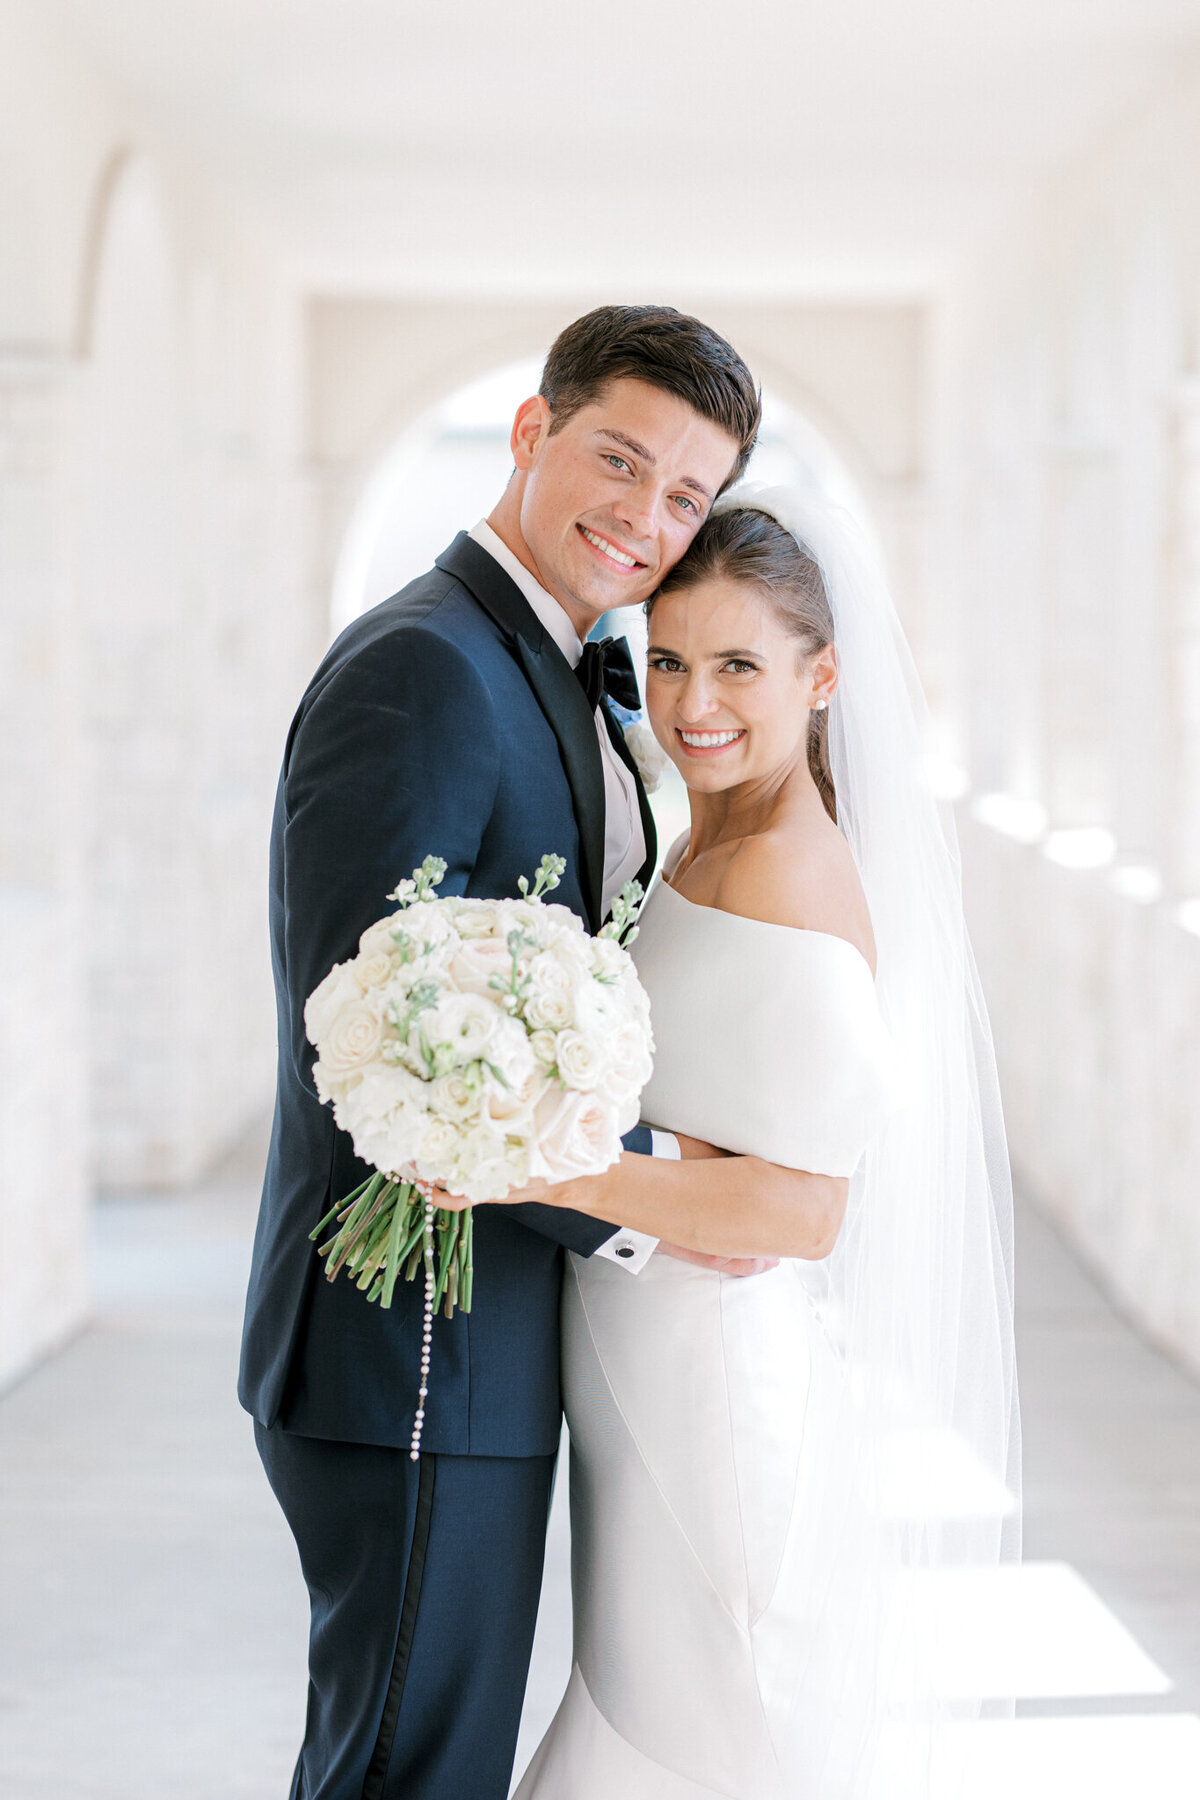 Annie & Logan's Wedding | Dallas Wedding Photographer | Sami Kathryn Photography-5